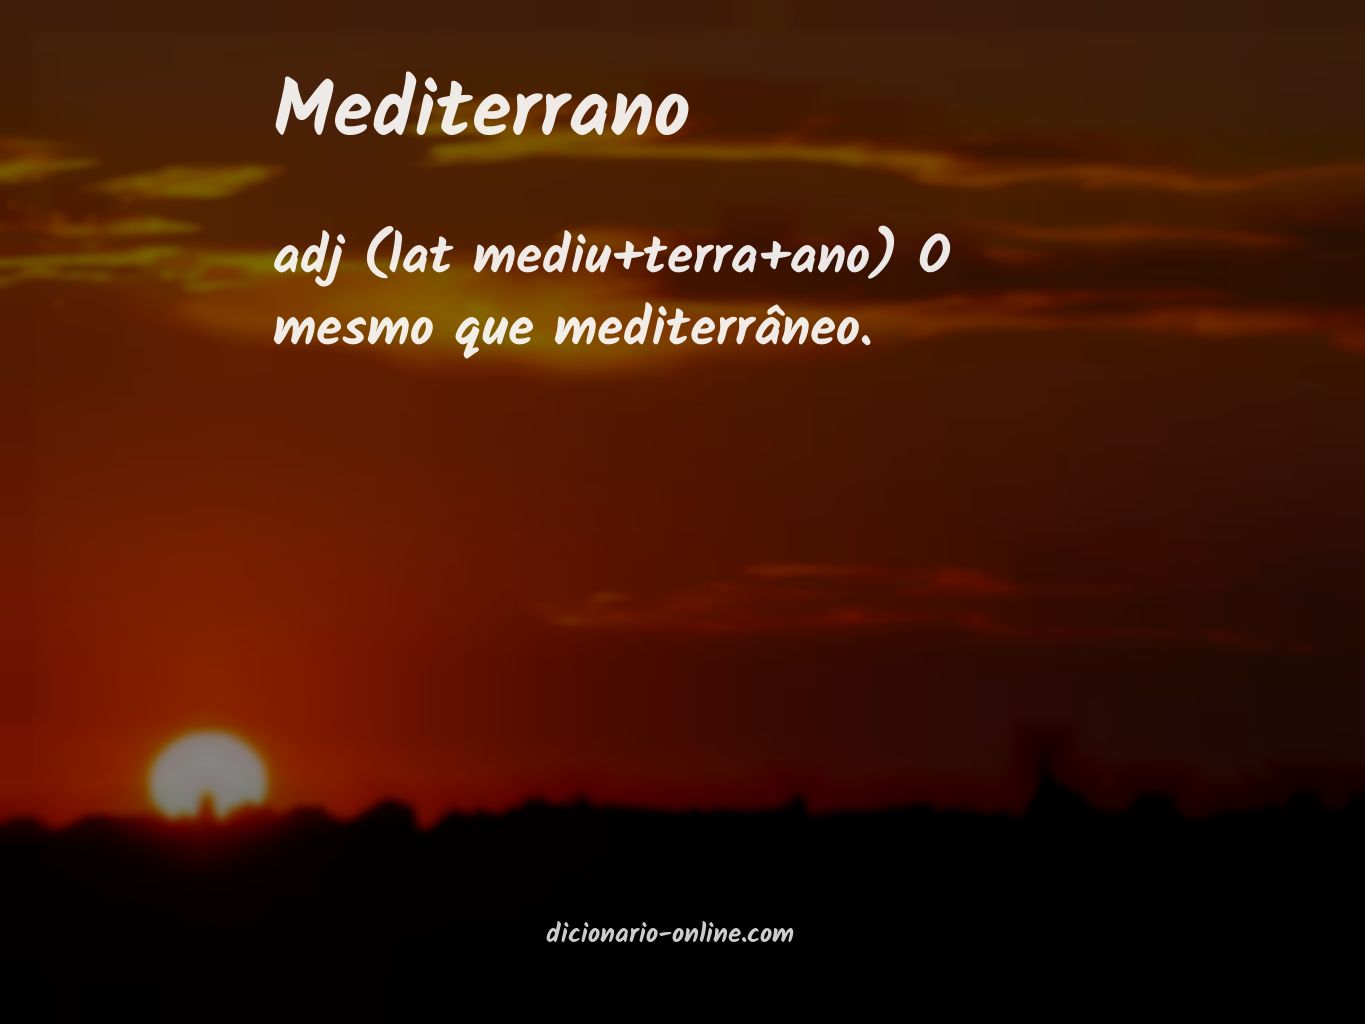 Significado de mediterrano